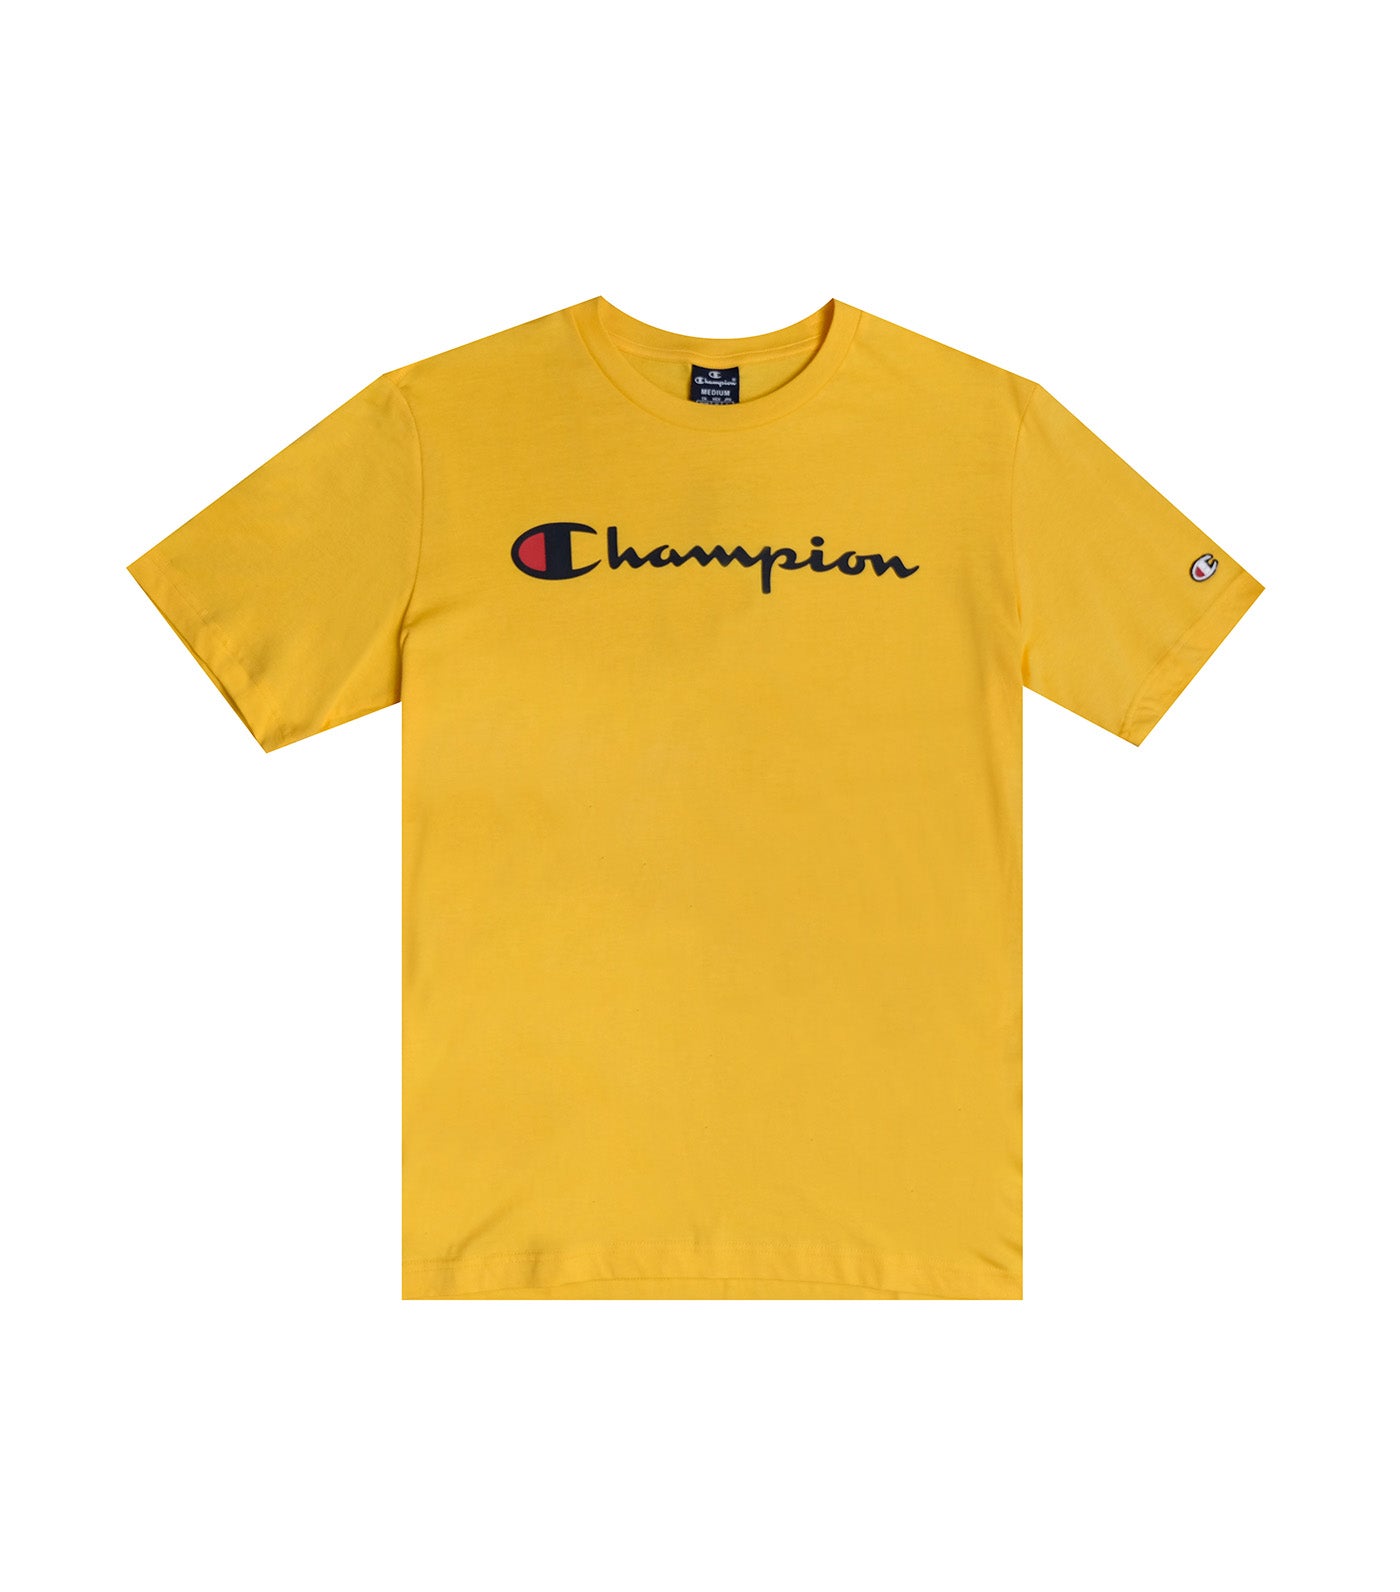 EU Line Crewneck T-Shirt Yellow